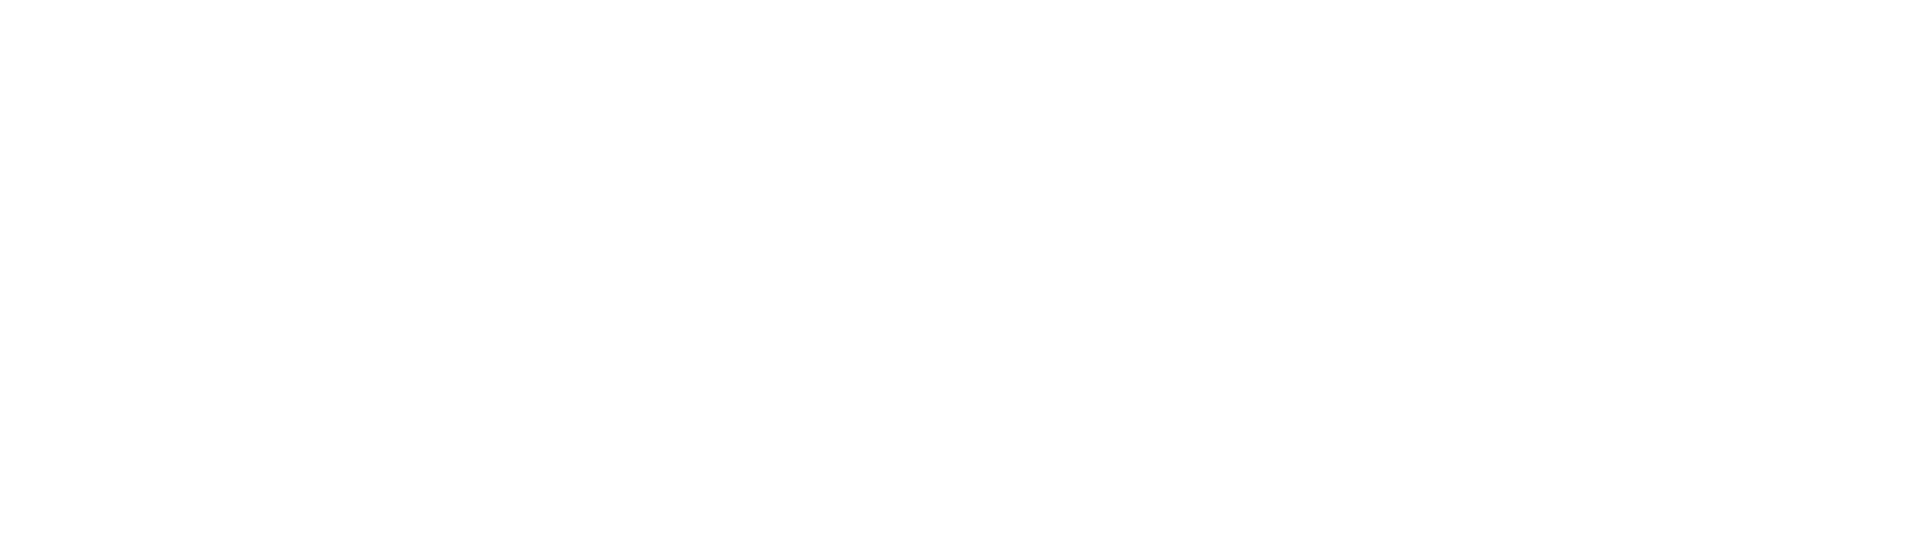 Jousiffe Garden Design